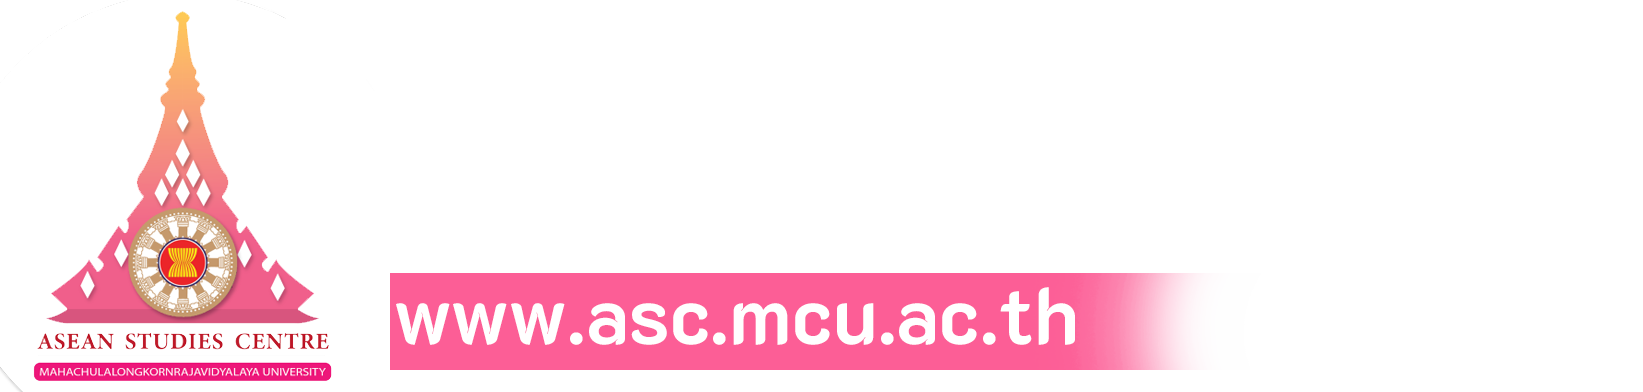 ASEAN Studies Centre